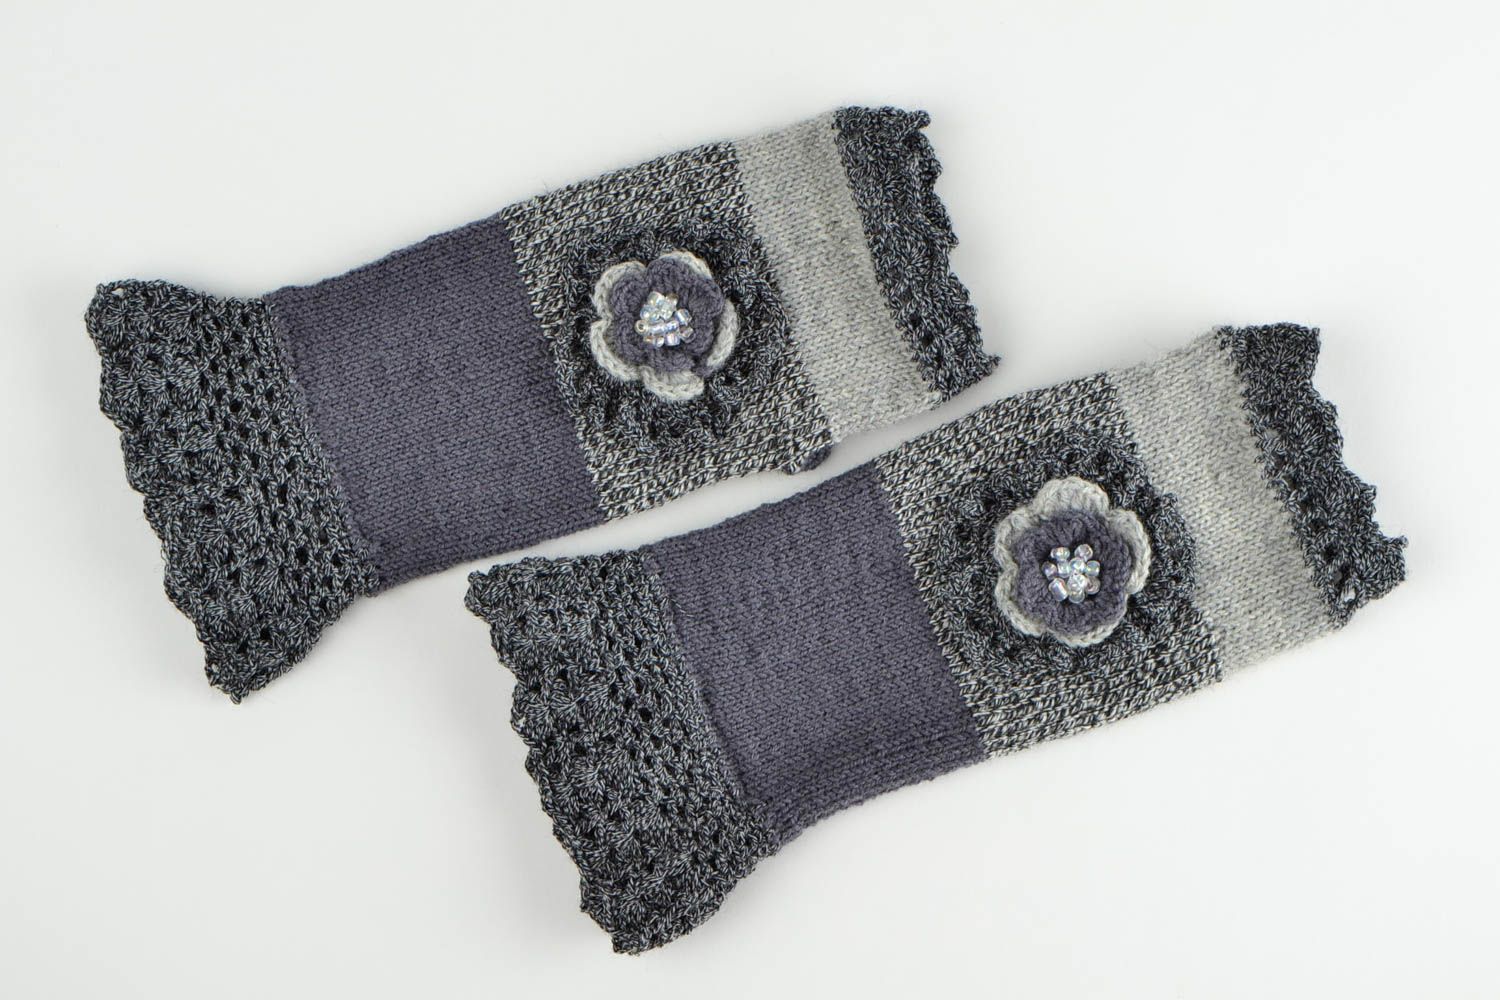 Mitaines tricot faites main Gants mitaines crochet laine Accessoire femme photo 2